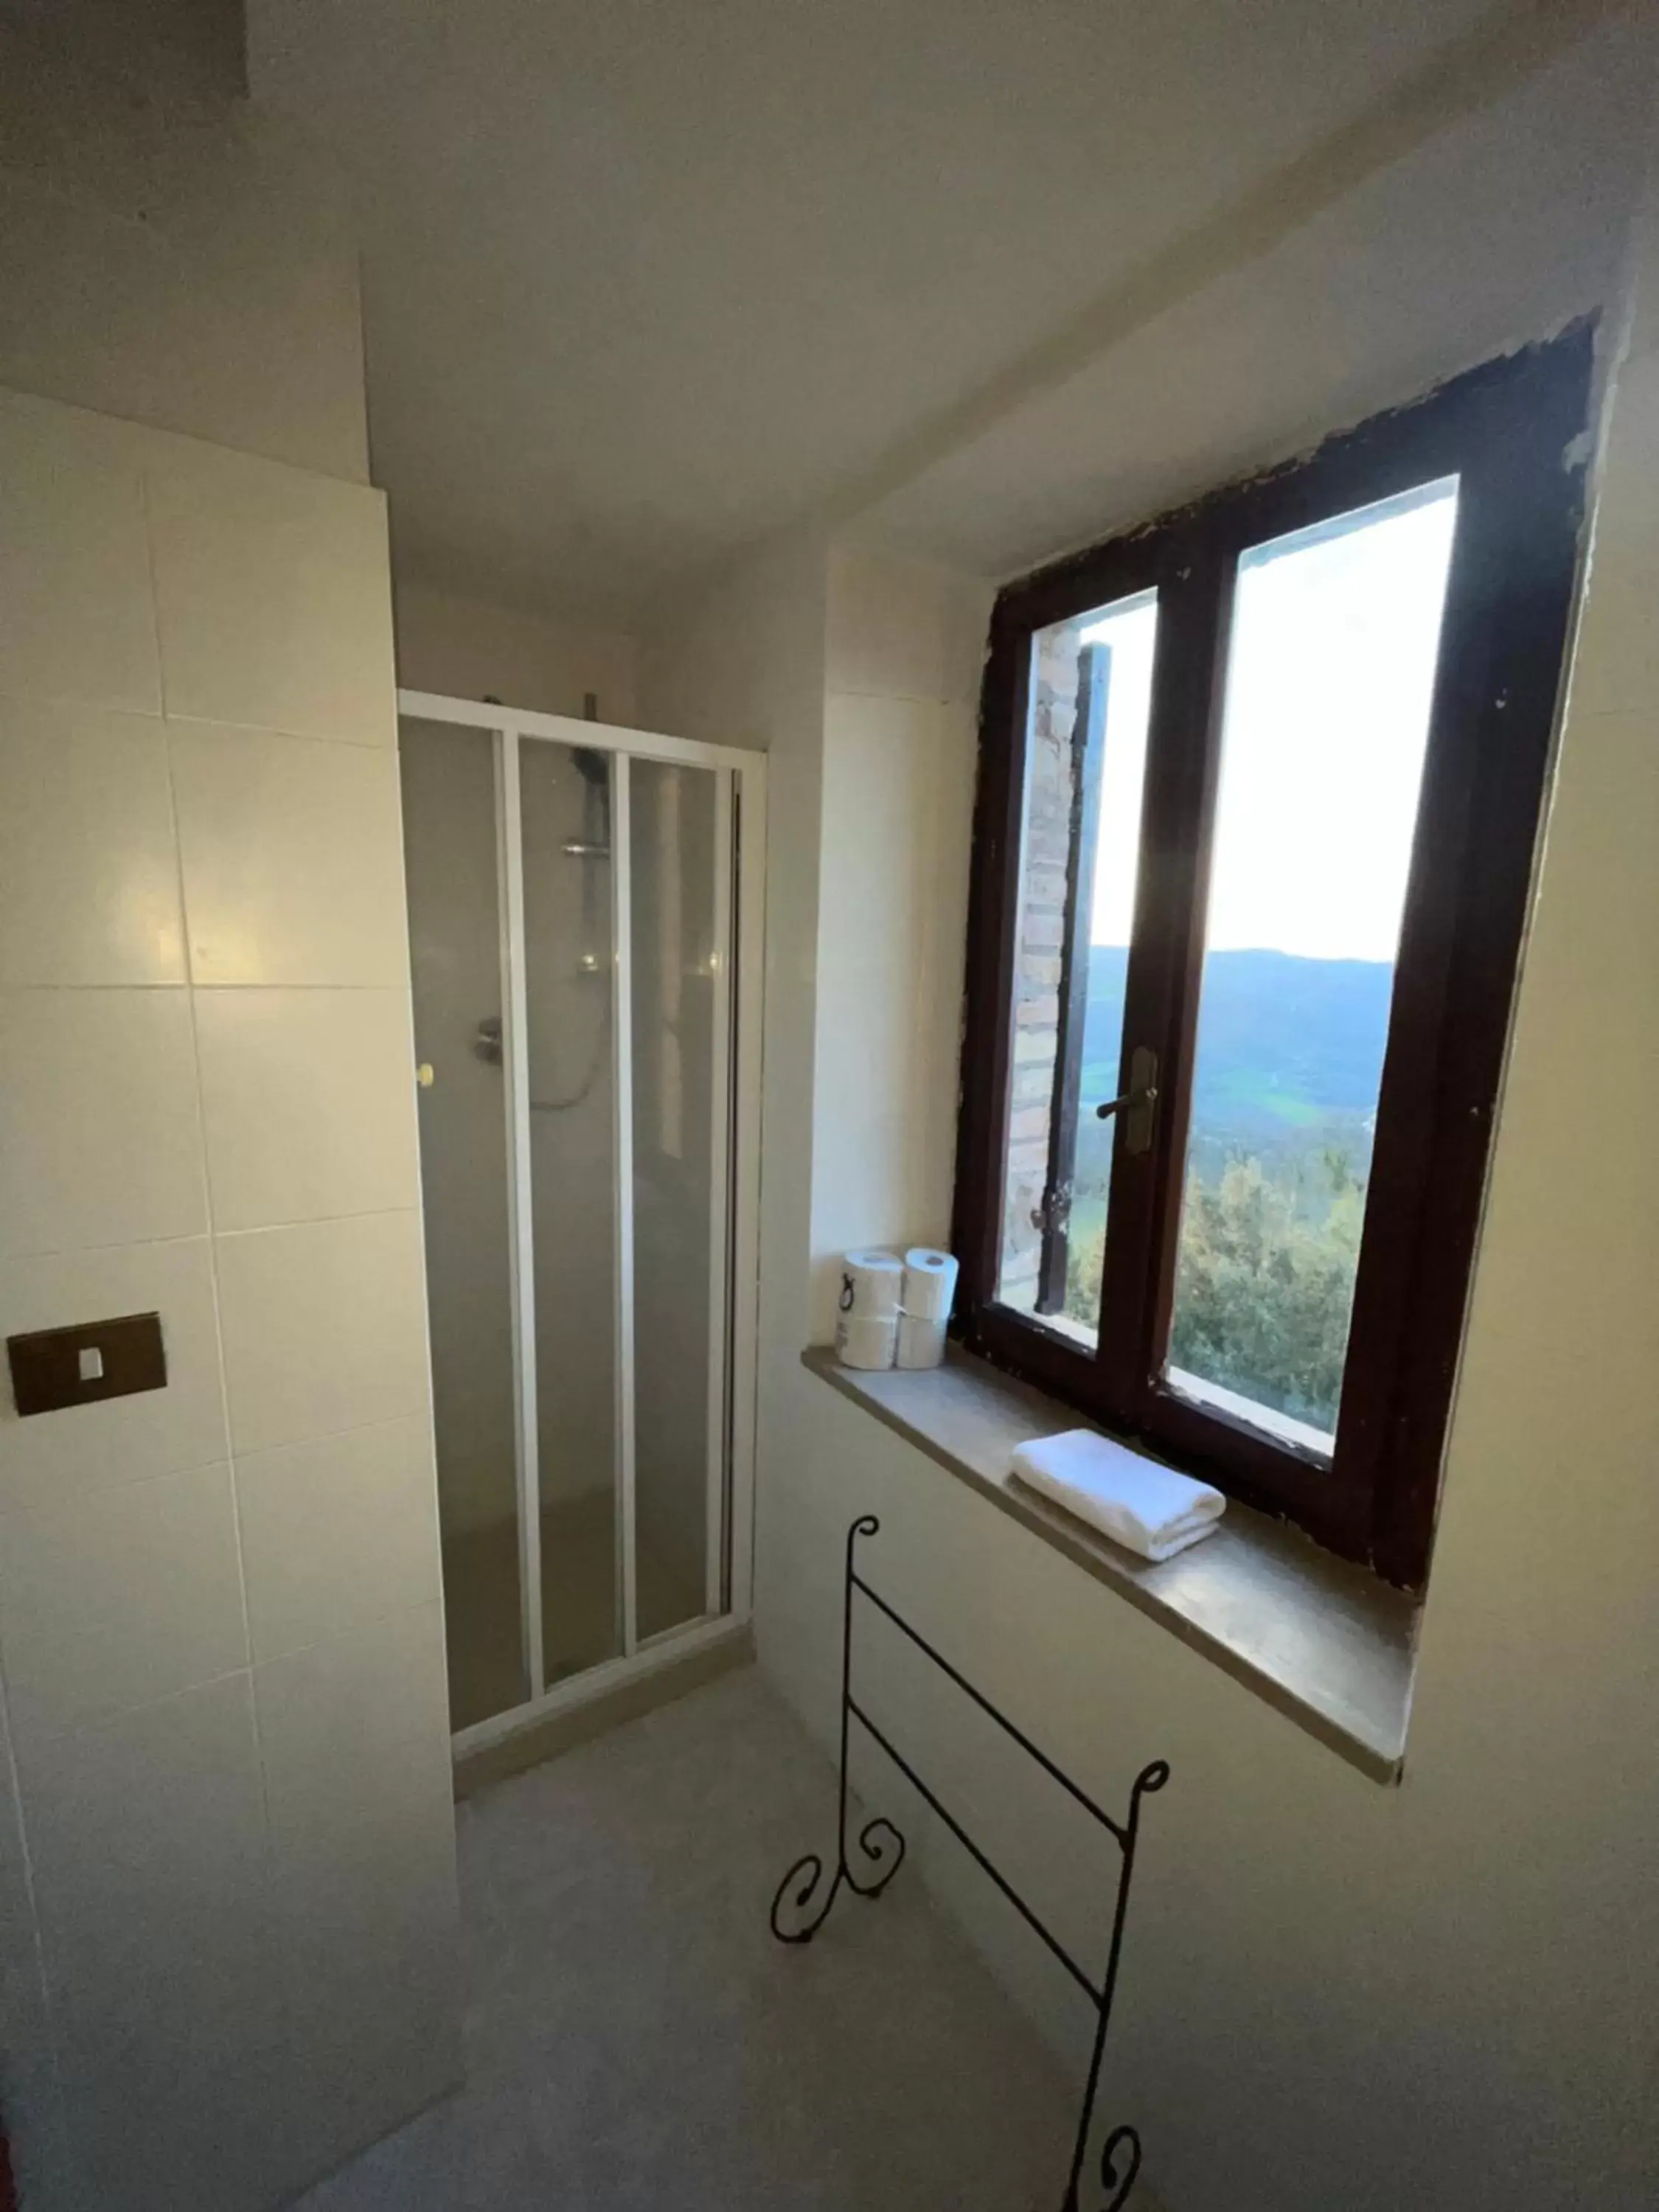 Bathroom in Castello Di Giomici